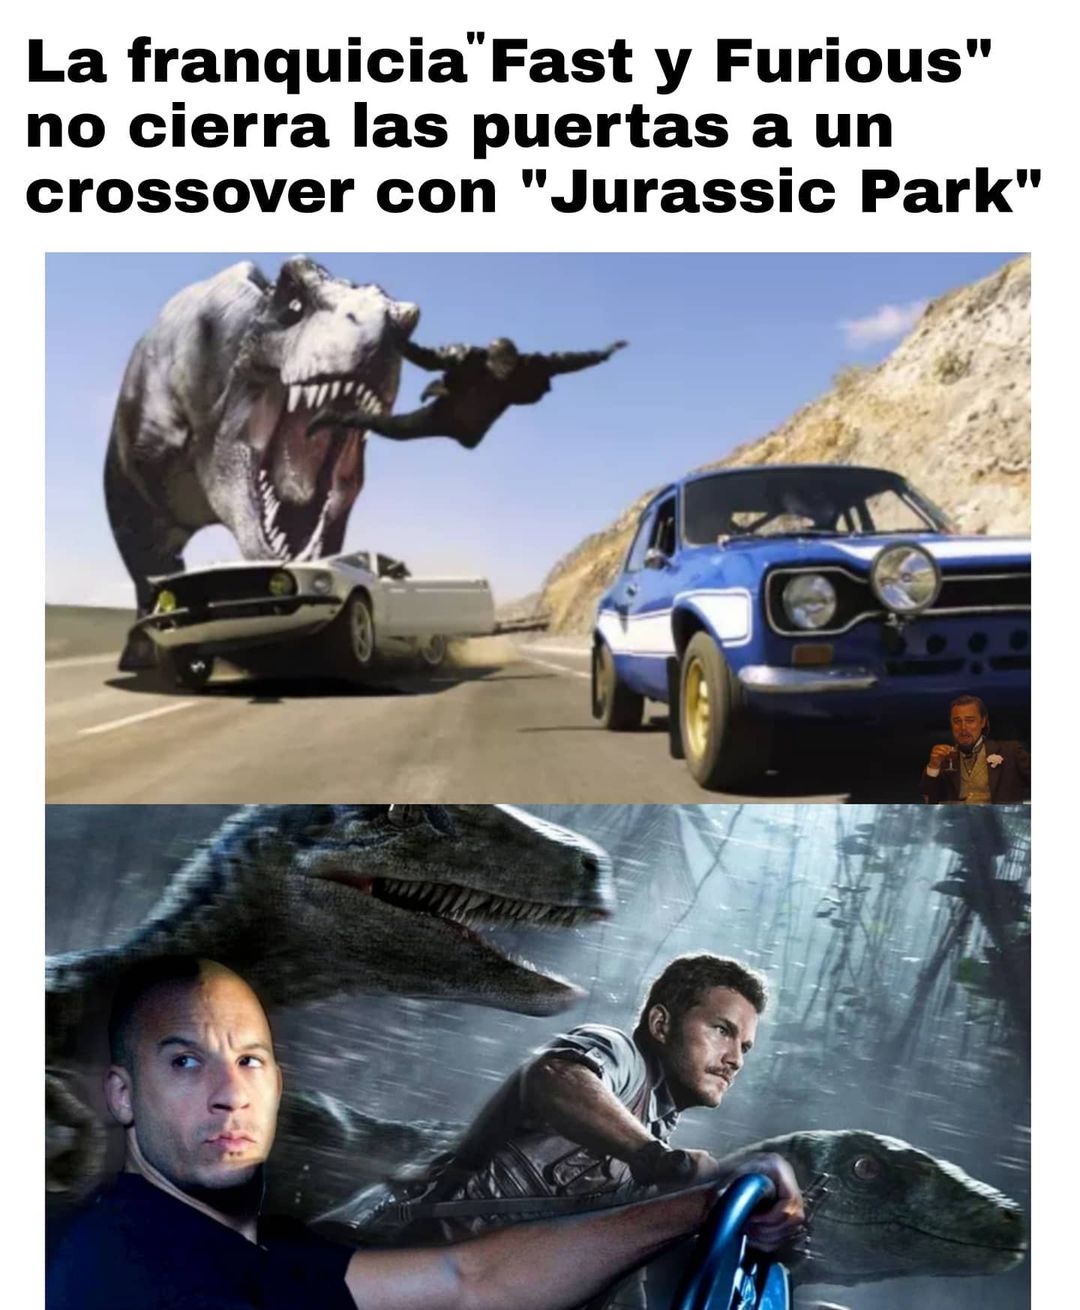 La franquicia "Fast y Furious" no cierra las puertas a un crossover con "Jurassic Park".